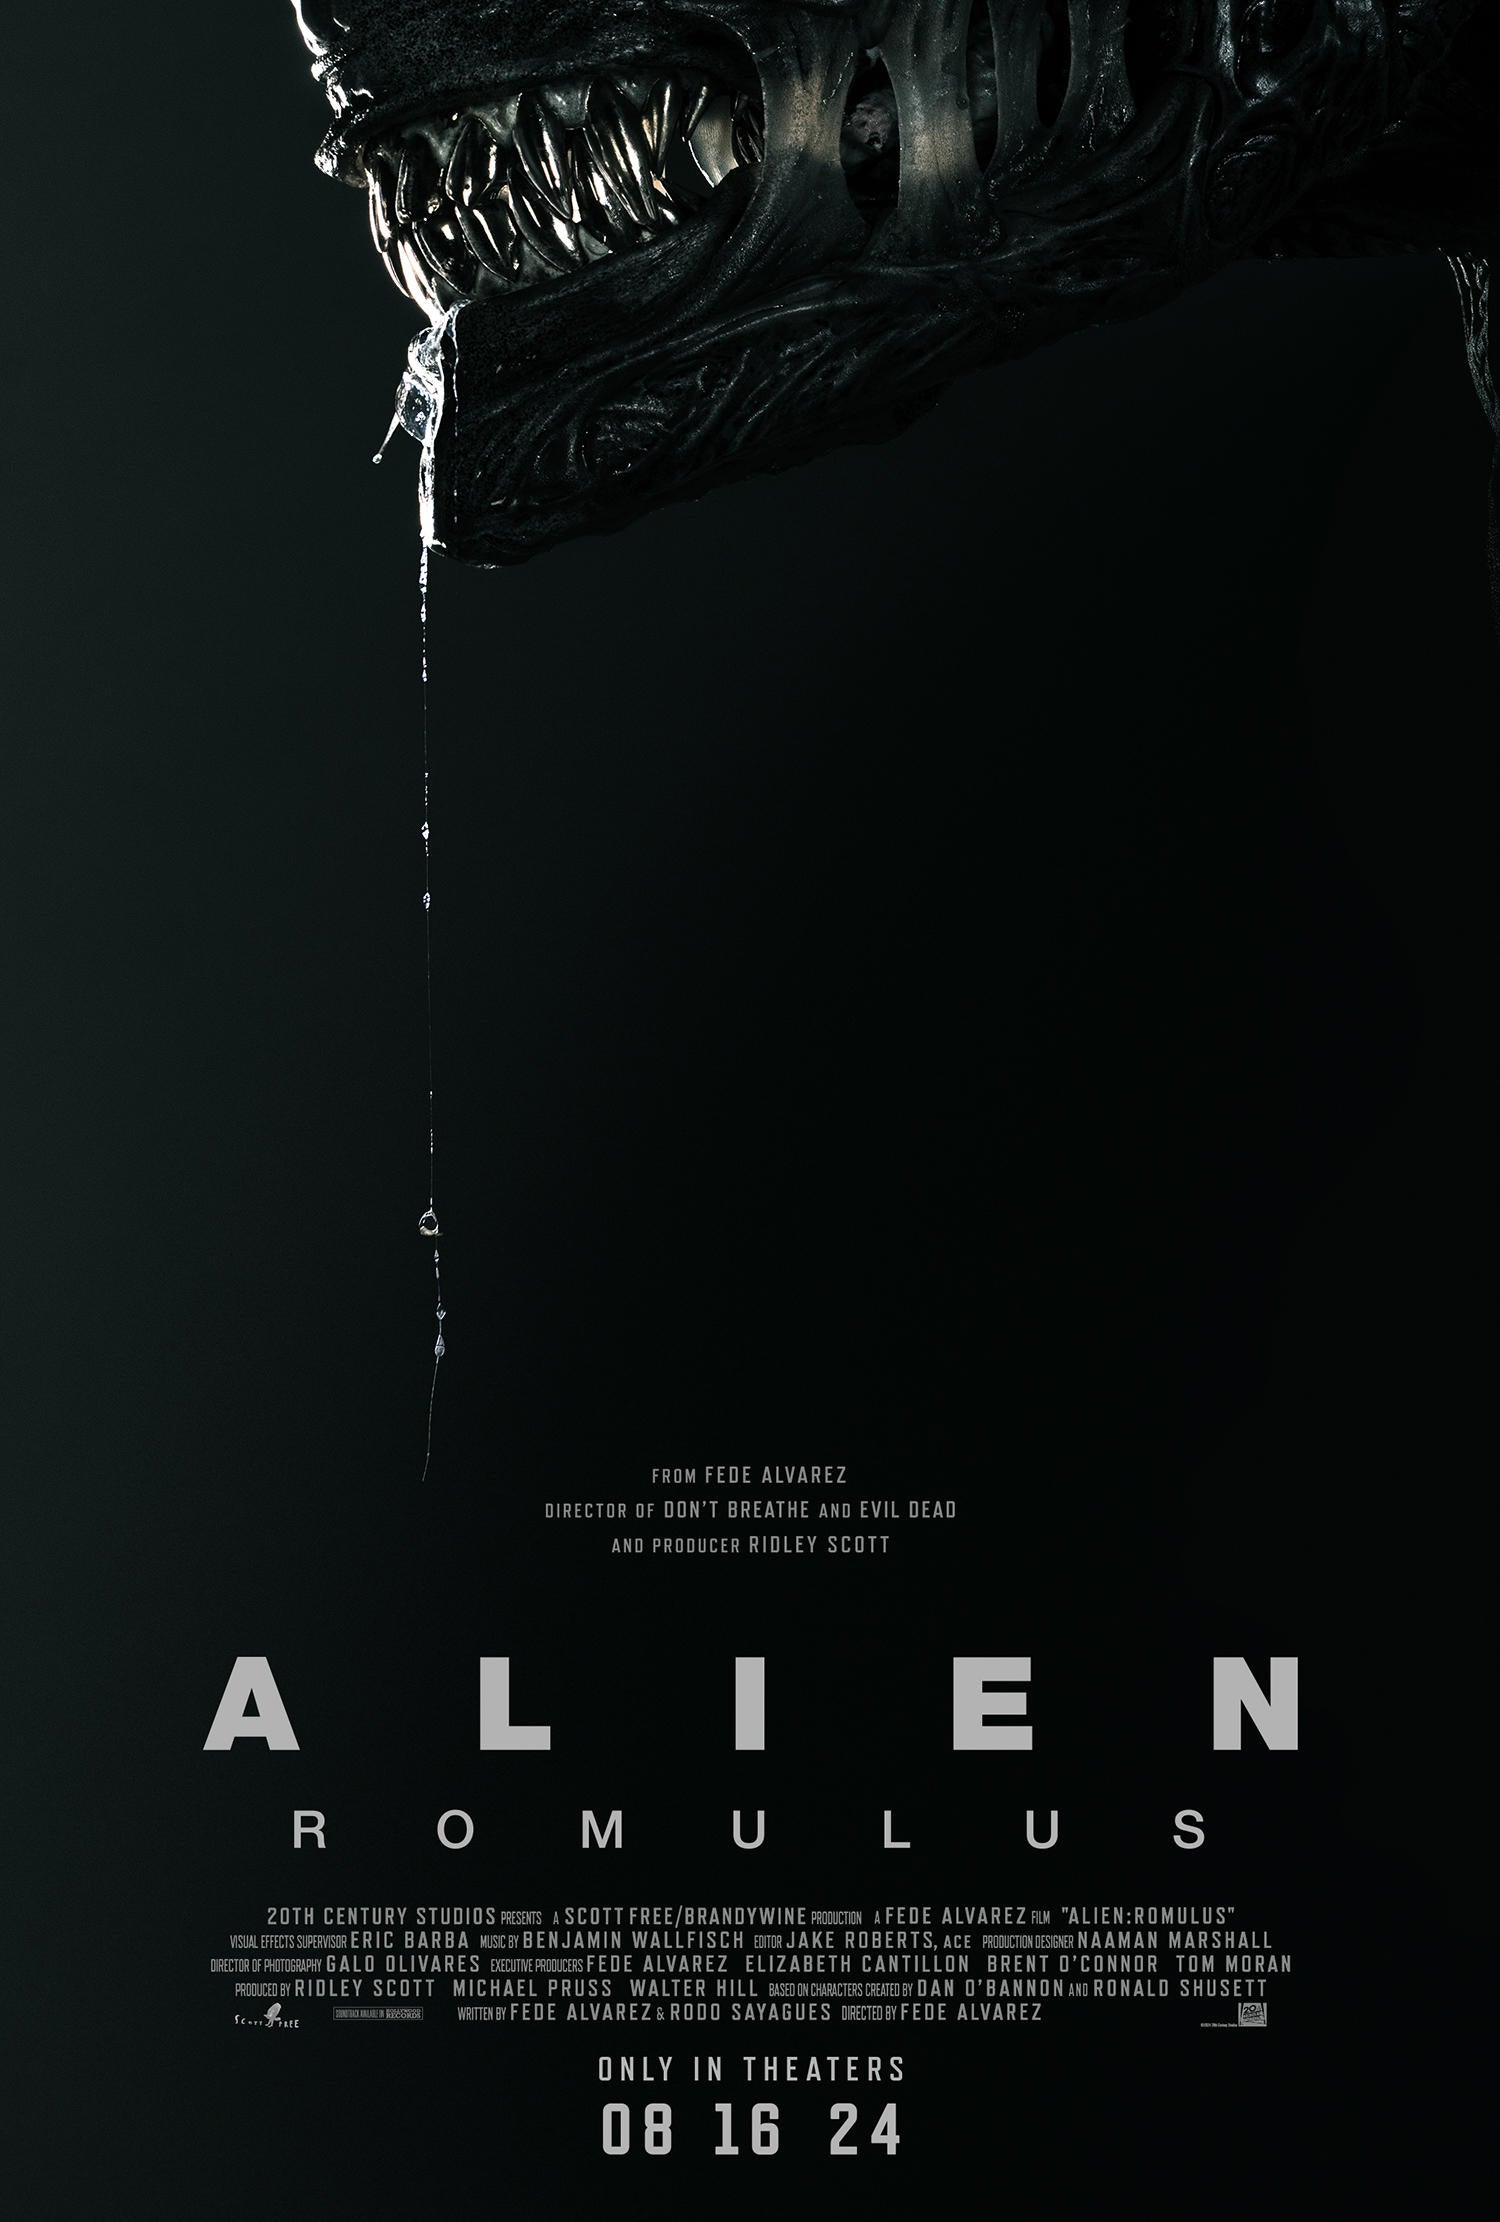 alien-romulus-teaser-poster.jpg